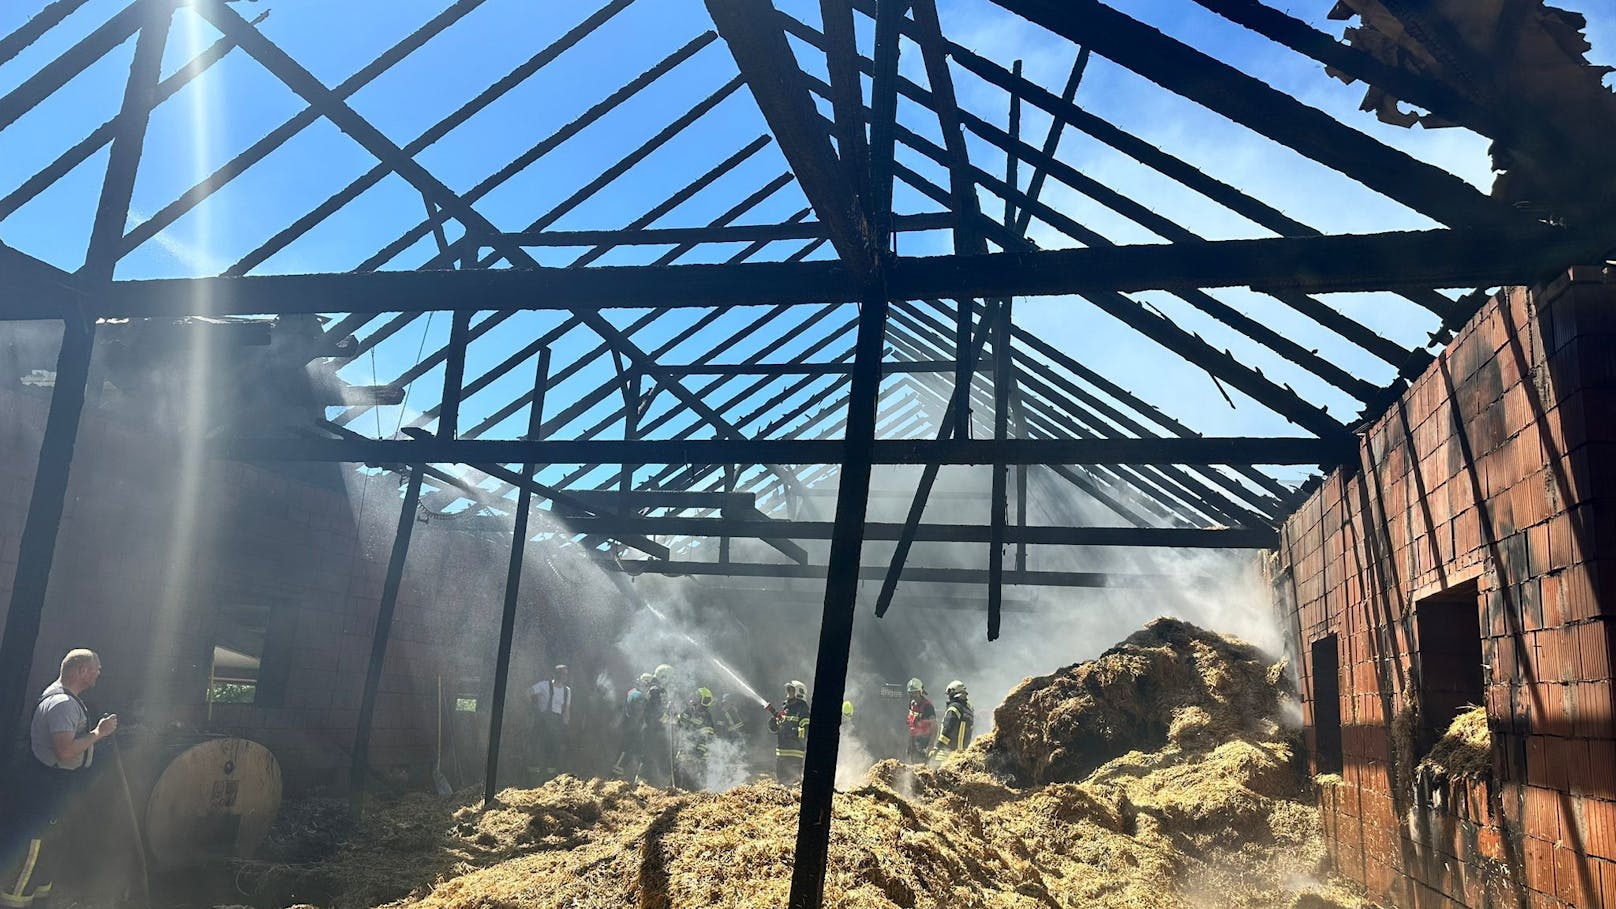 Bauernhof in Flammen – Feuerwehr rettet 120 Milchkühe